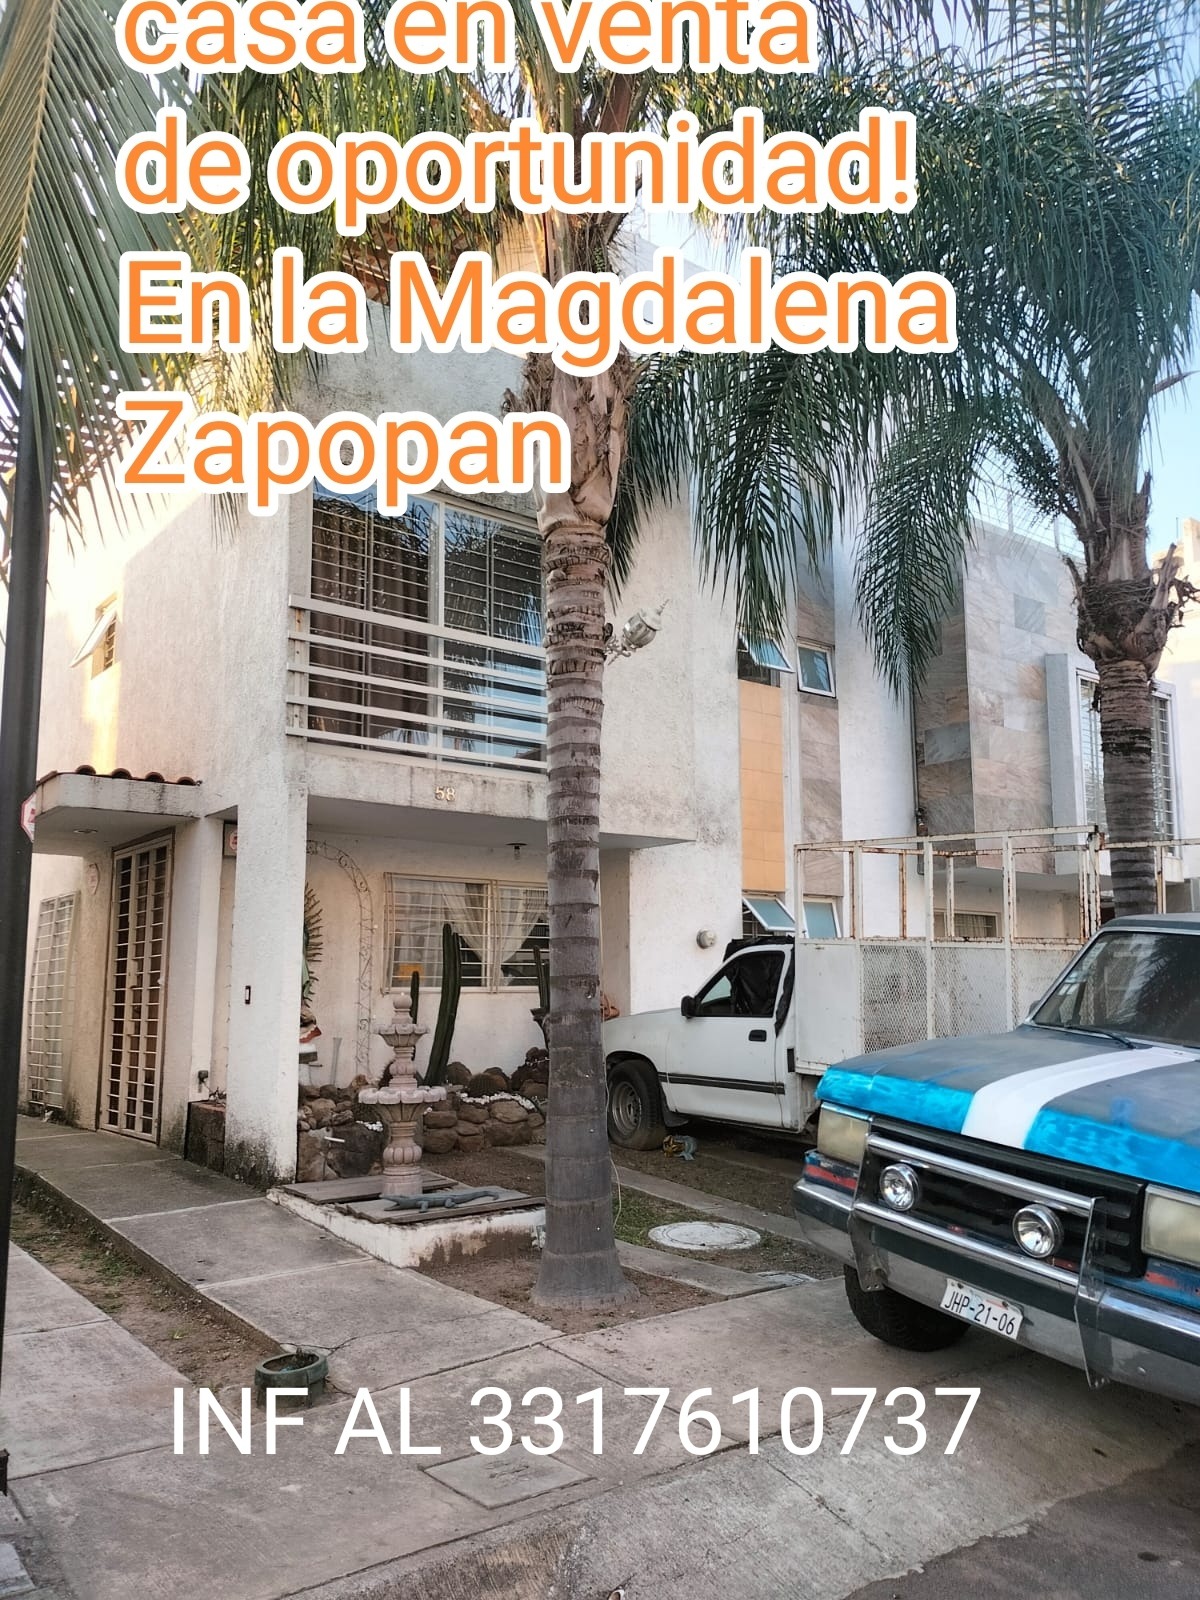 Casa de oportunidad en la Magdalena Zapopan